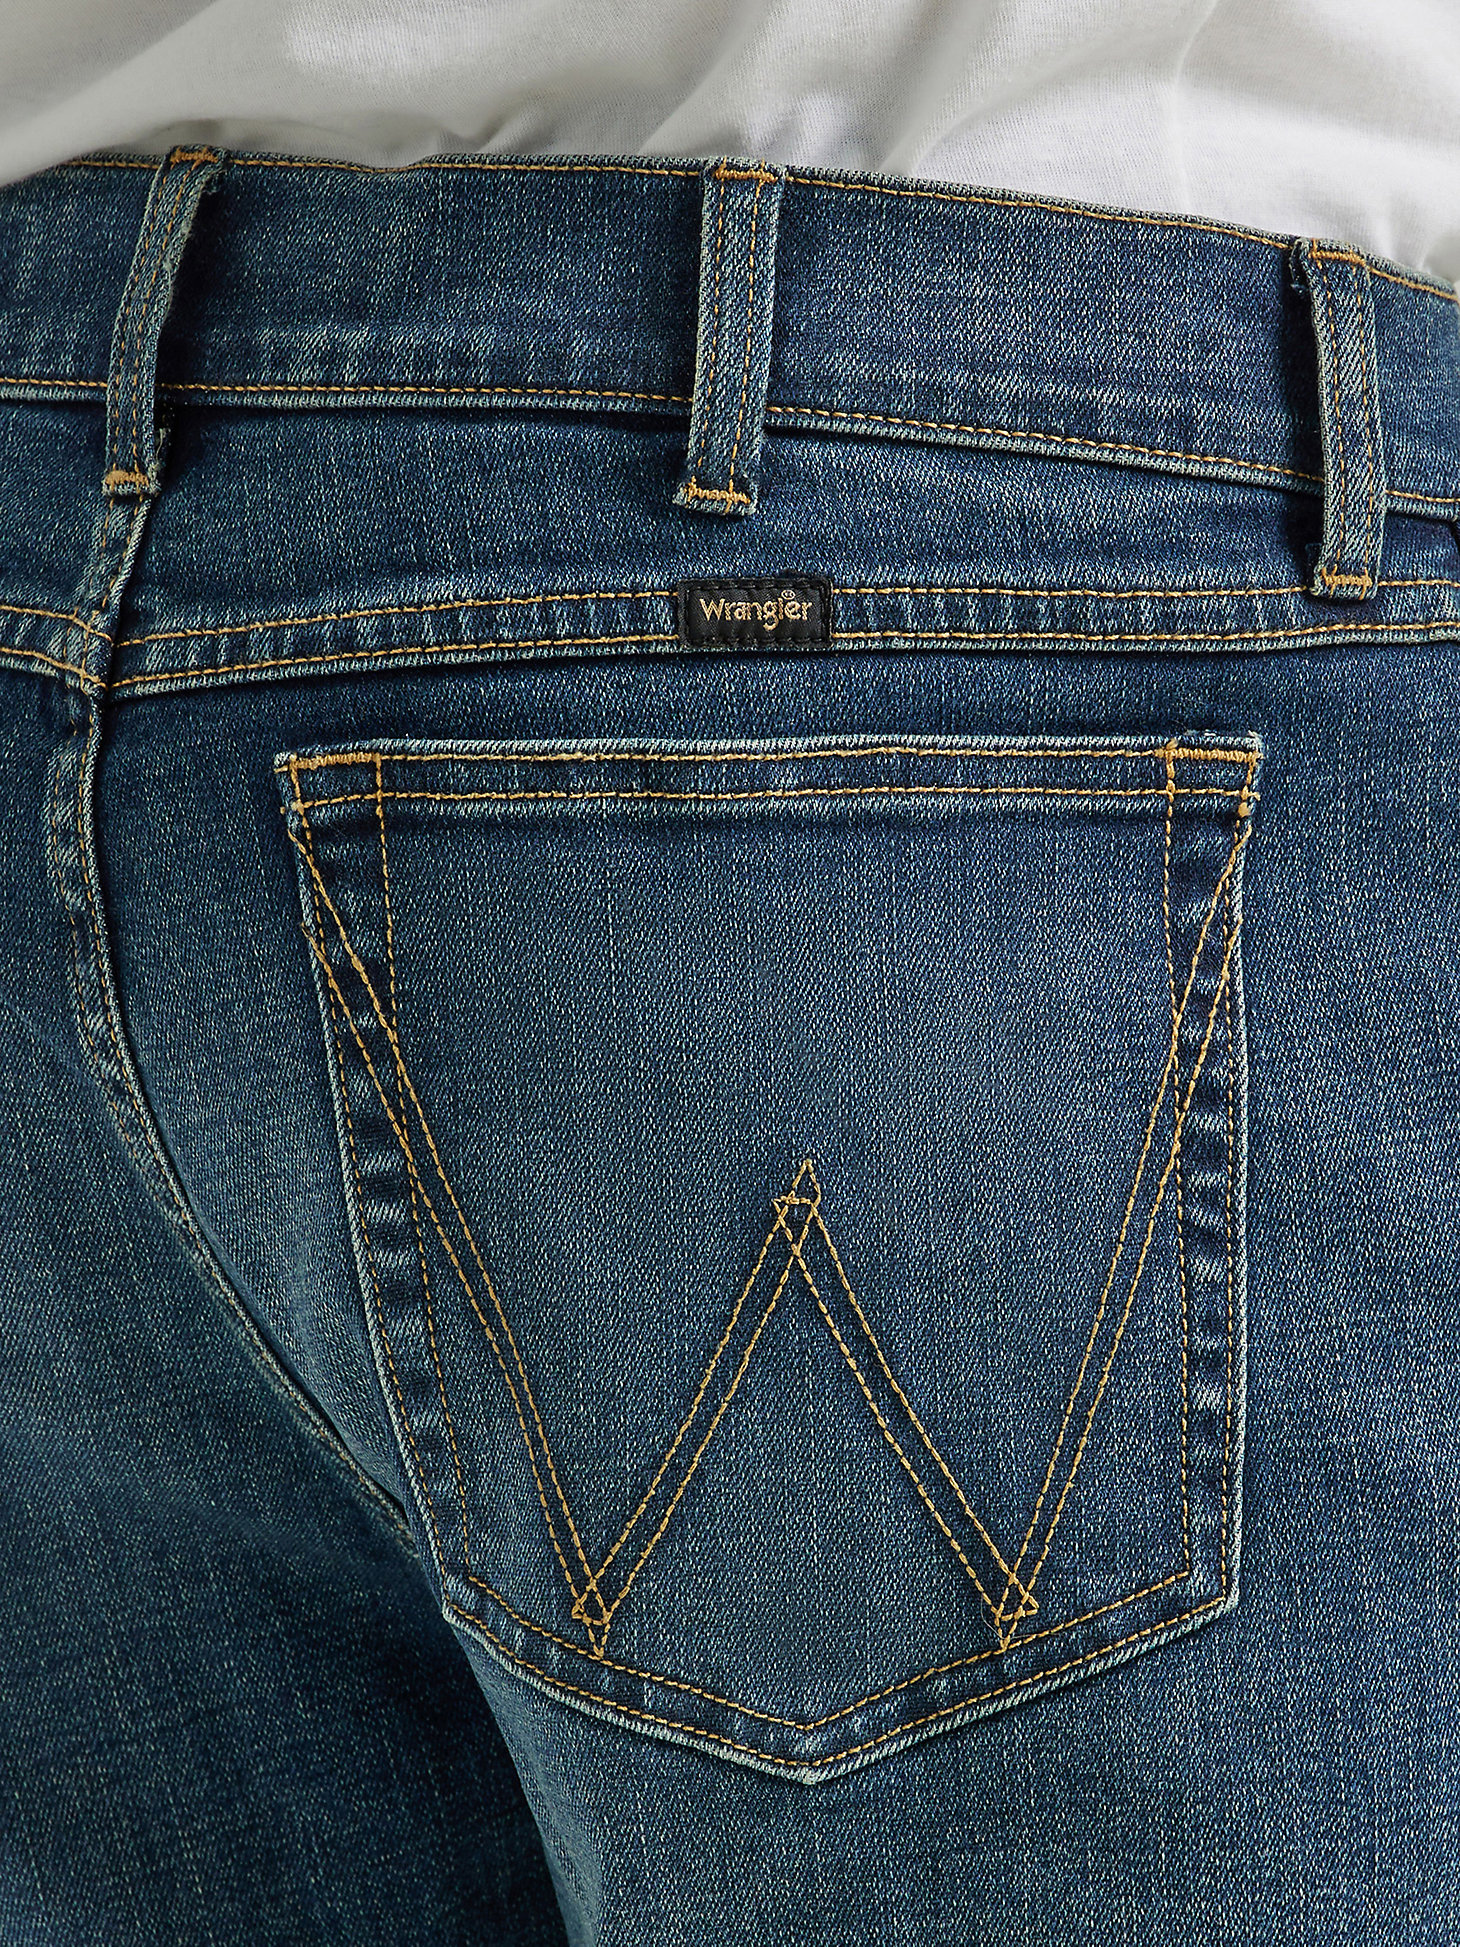 Men's Wrangler® Slim Straight Jean in Mid Wash alternative view 5